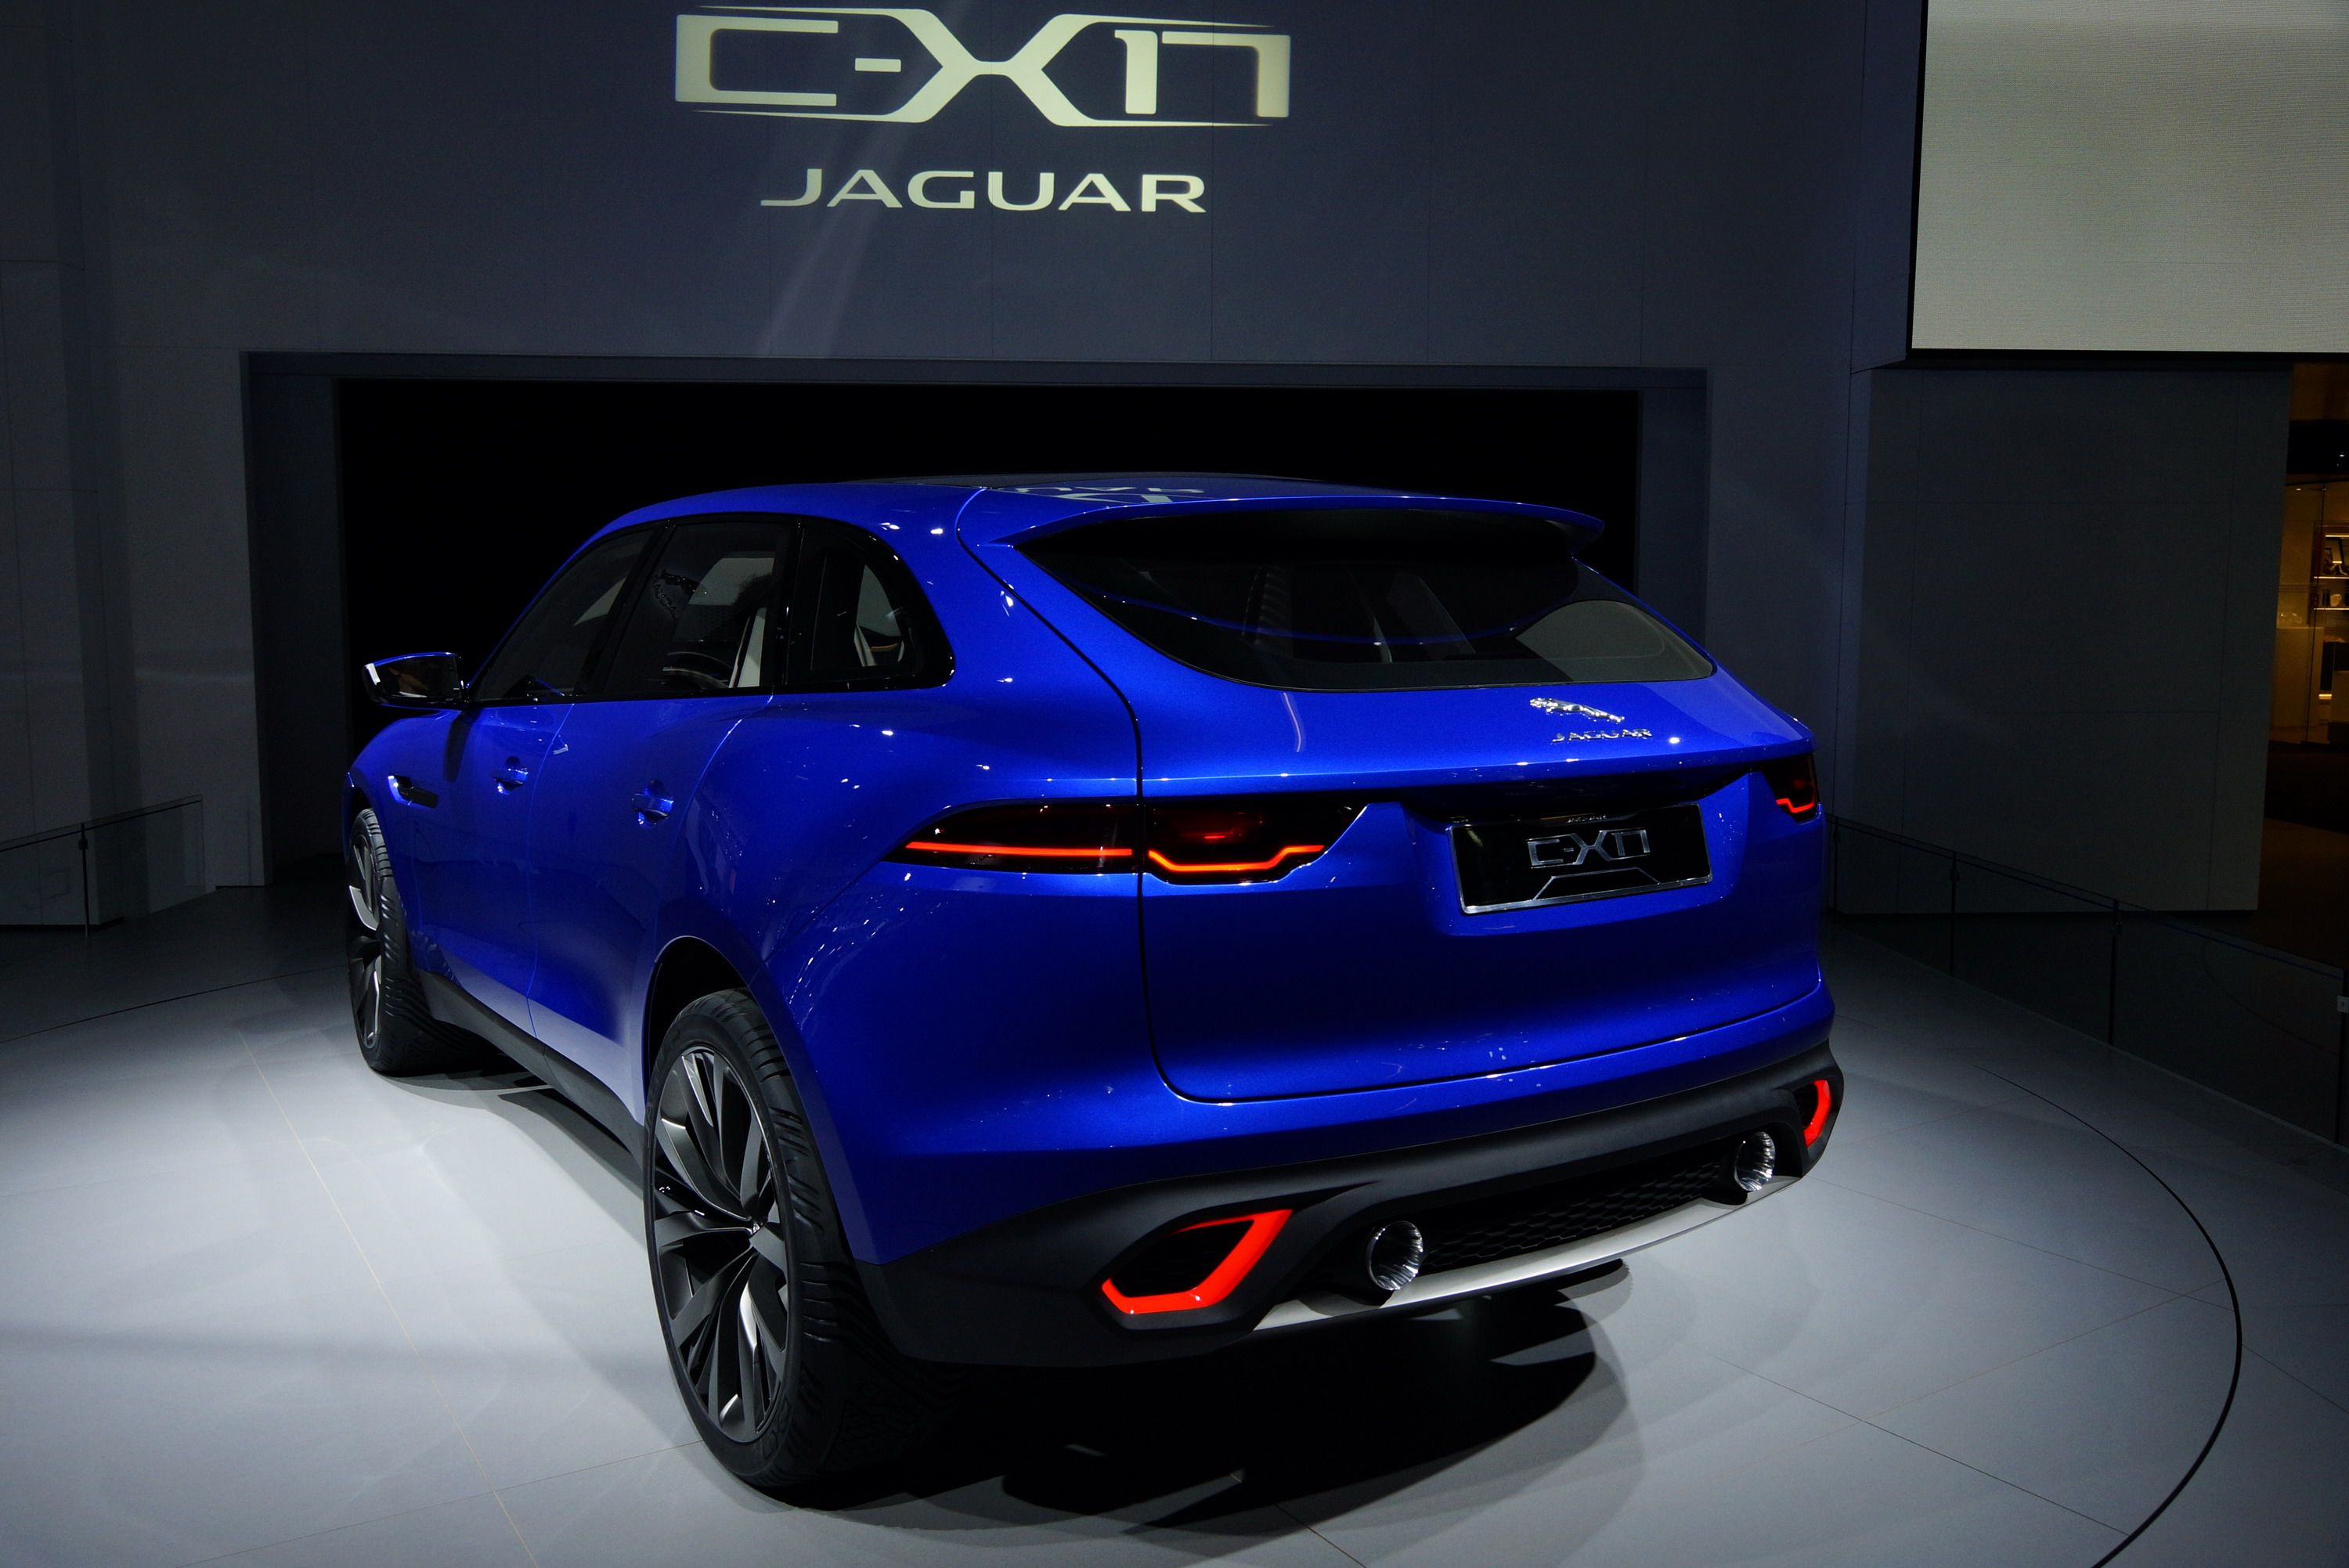 2014 Jaguar C-X17 Concept